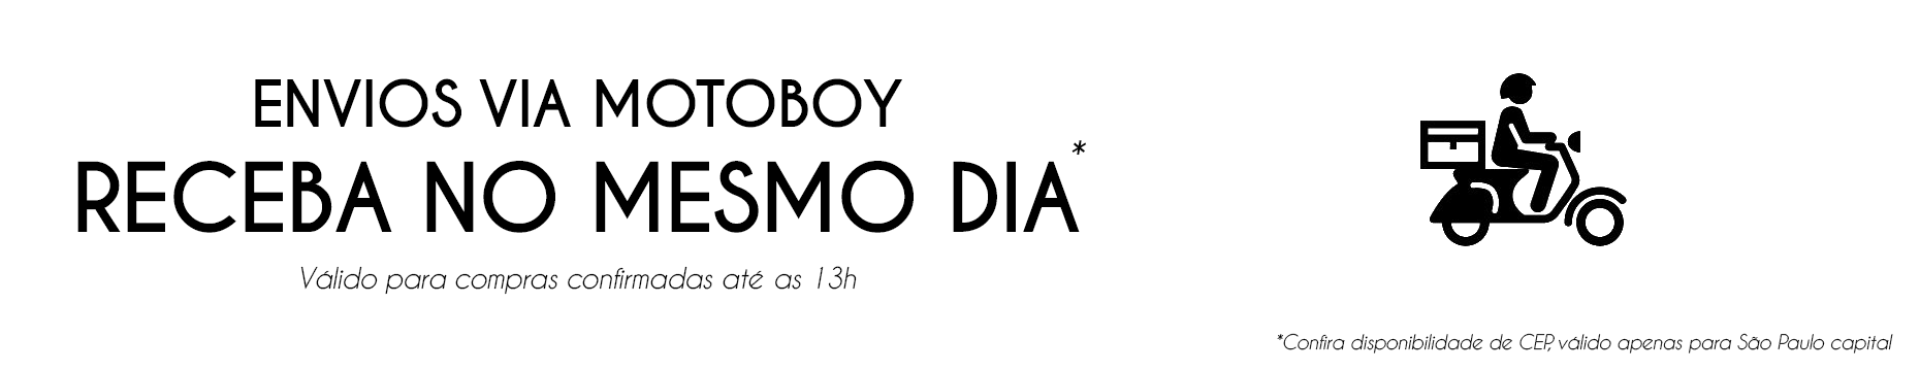 Motoboy banner